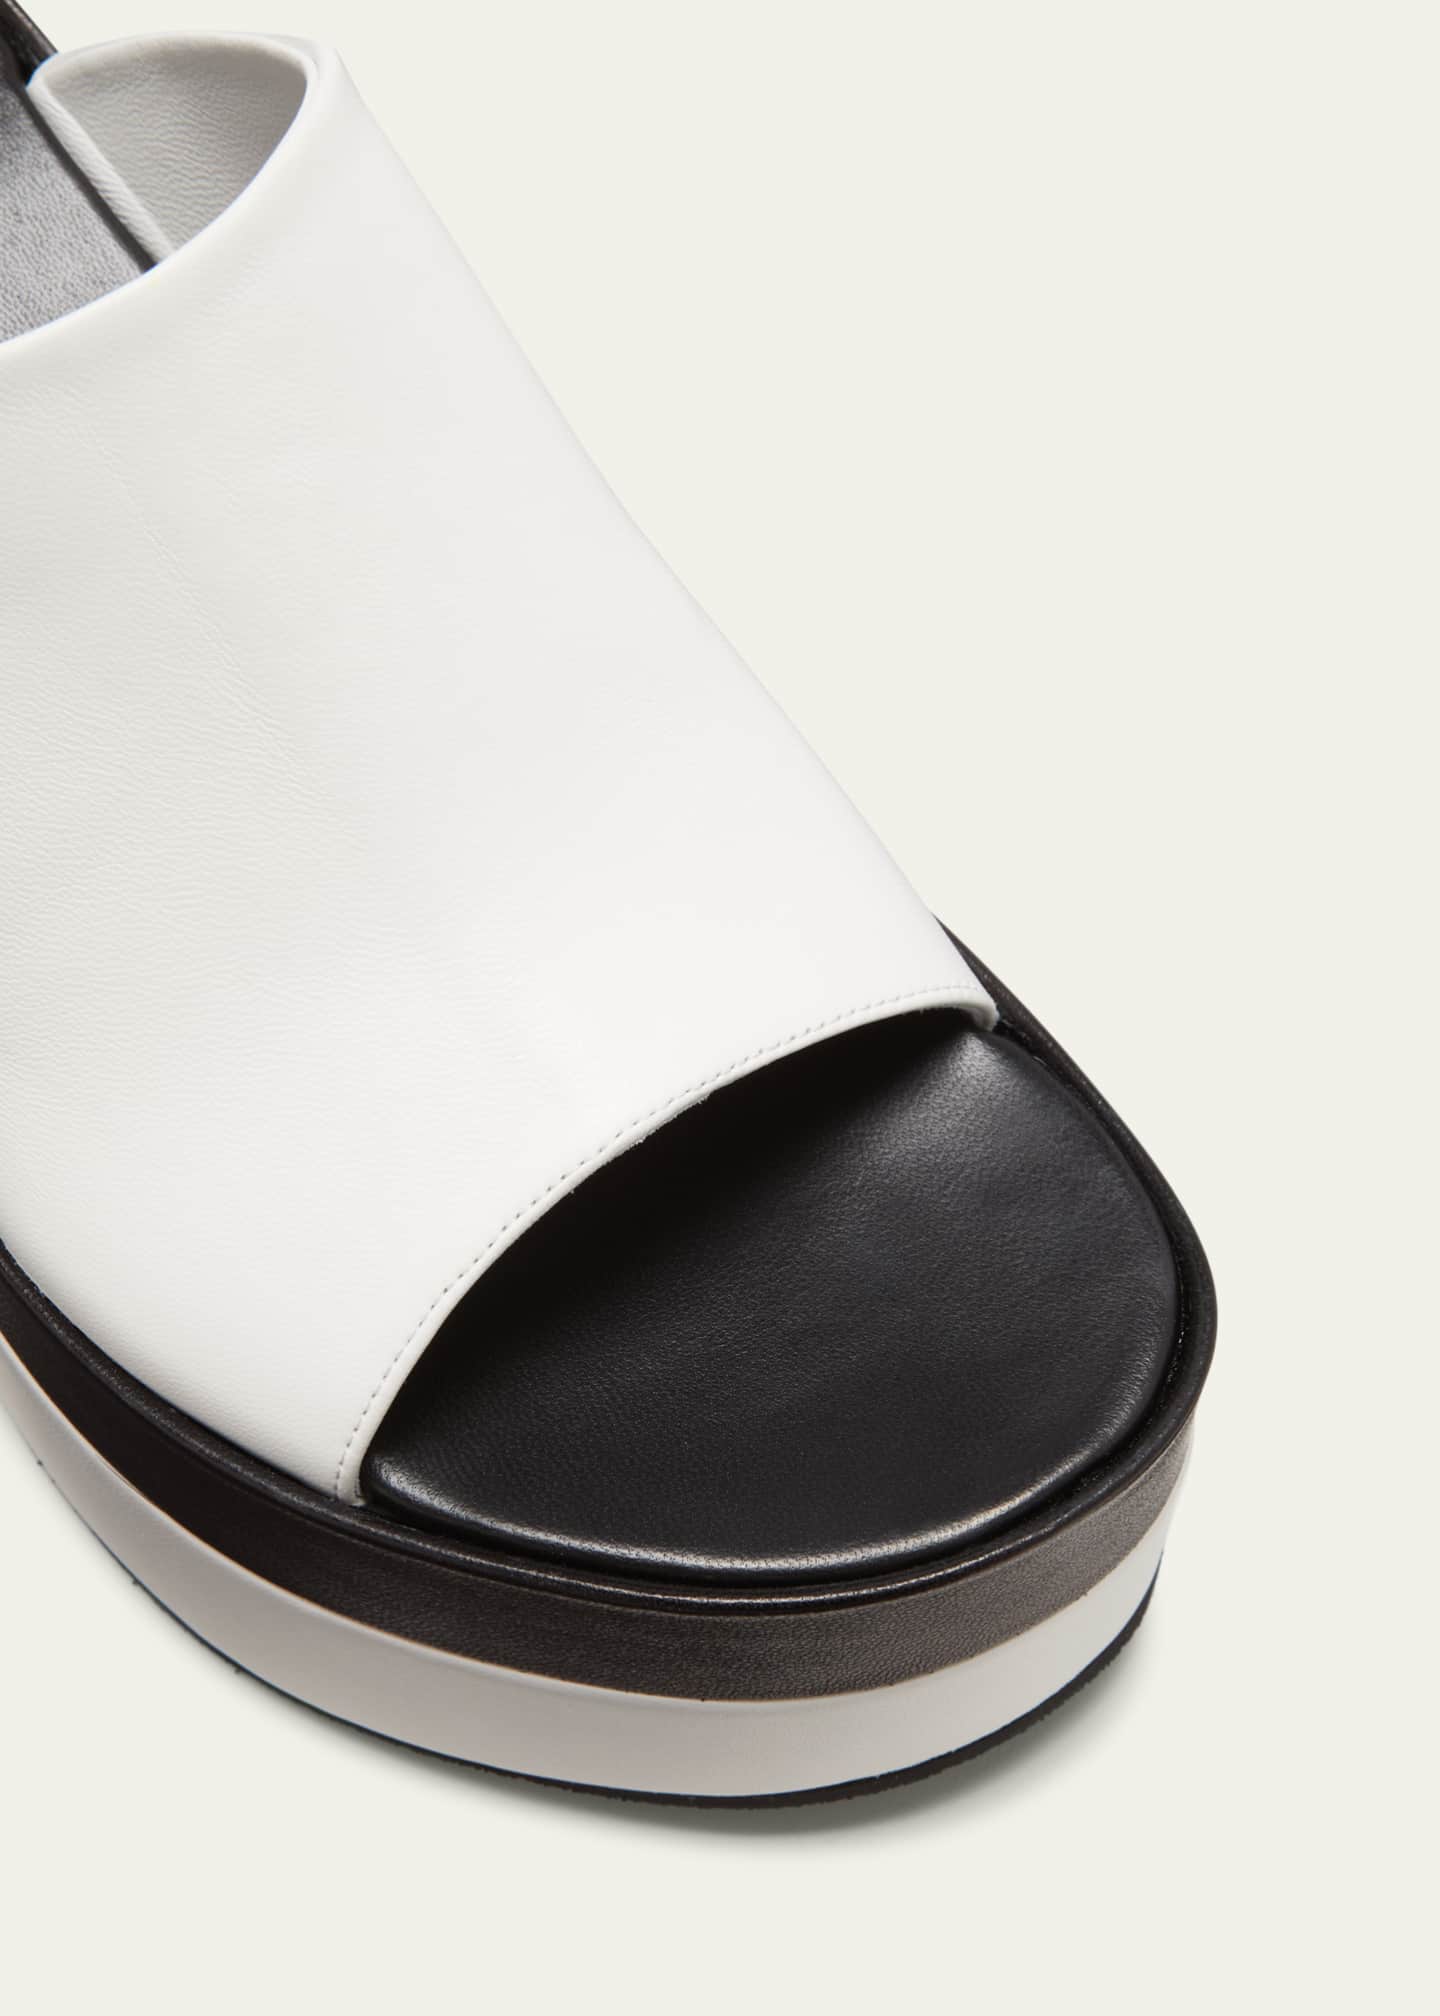 Dries Van Noten Modern Bicolor Wedge Sandals - Bergdorf Goodman